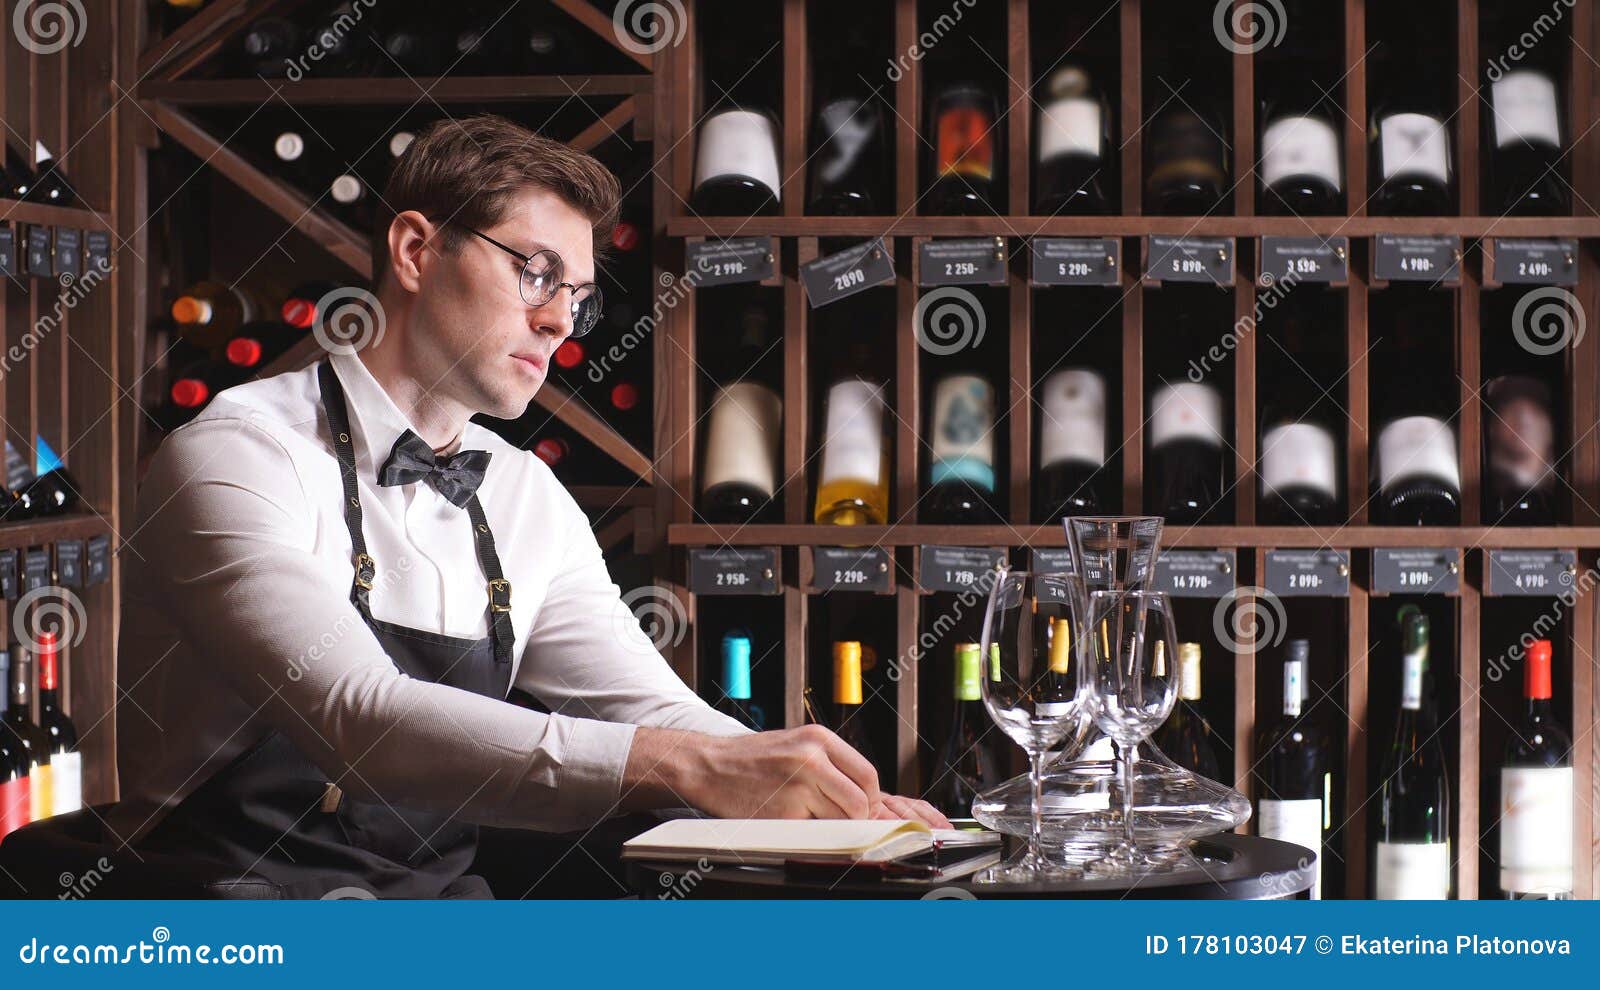 working as a wine steward